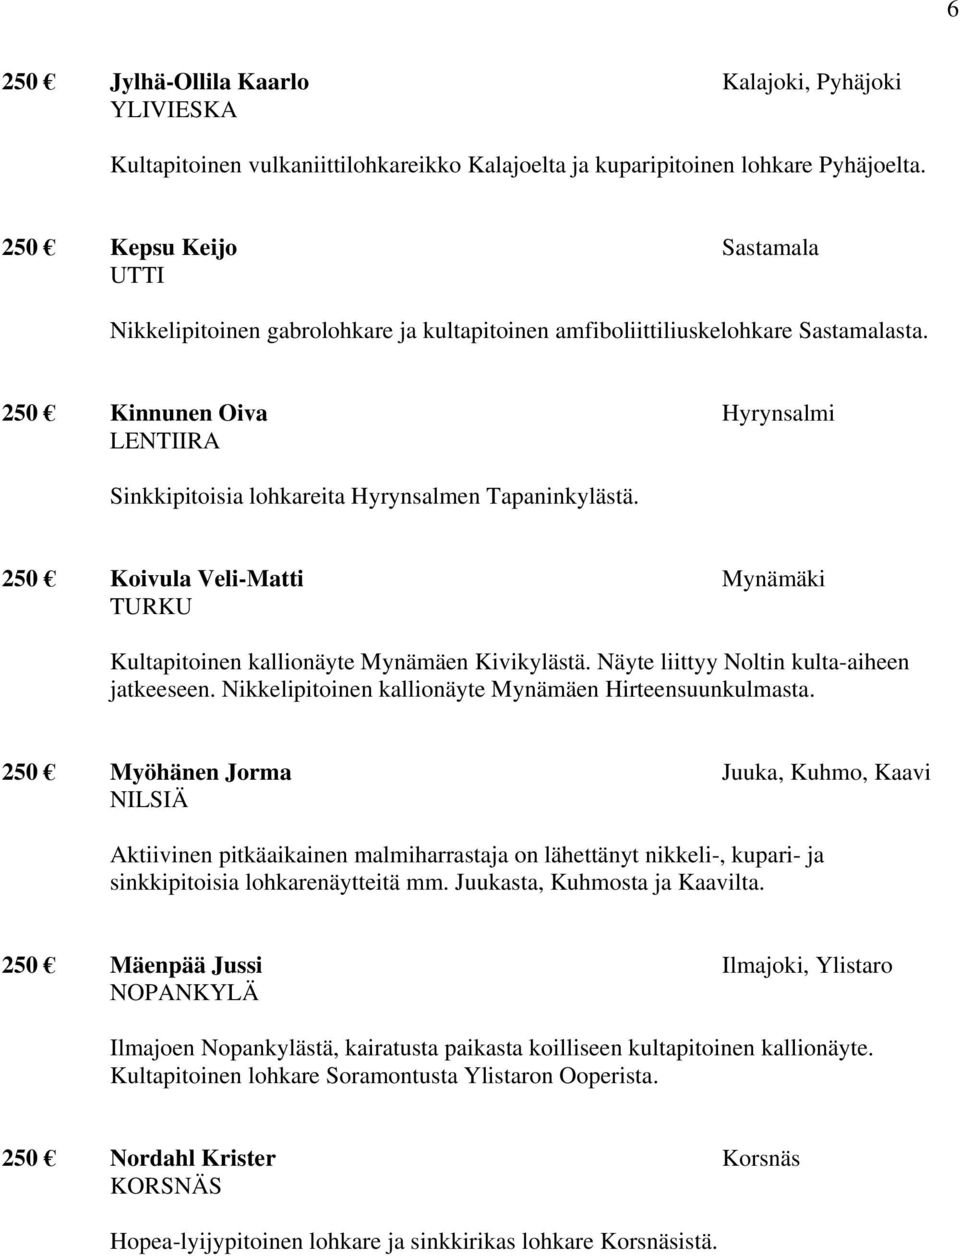 250 Kinnunen Oiva Hyrynsalmi LENTIIRA Sinkkipitoisia lohkareita Hyrynsalmen Tapaninkylästä. 250 Koivula Veli-Matti Mynämäki TURKU Kultapitoinen kallionäyte Mynämäen Kivikylästä.